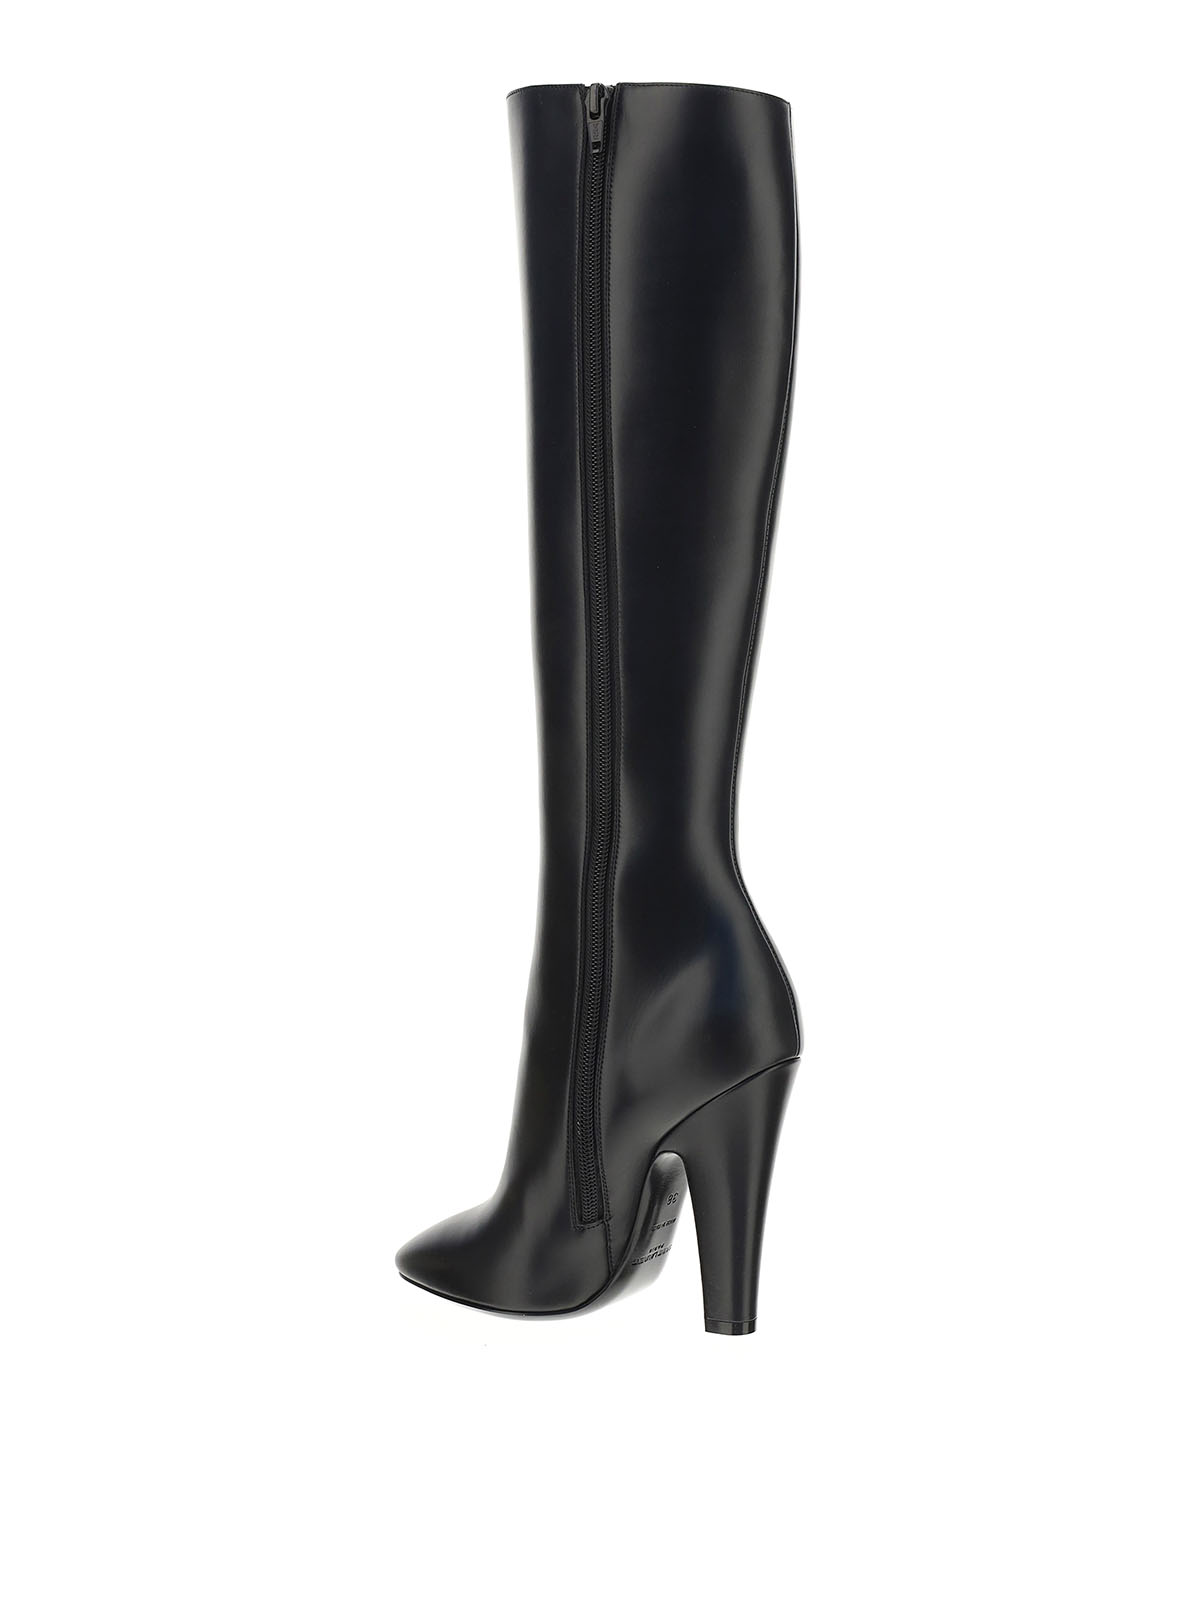 Saint Laurent - 68 boots - boots - 6579222W7001000 | Shop online at iKRIX